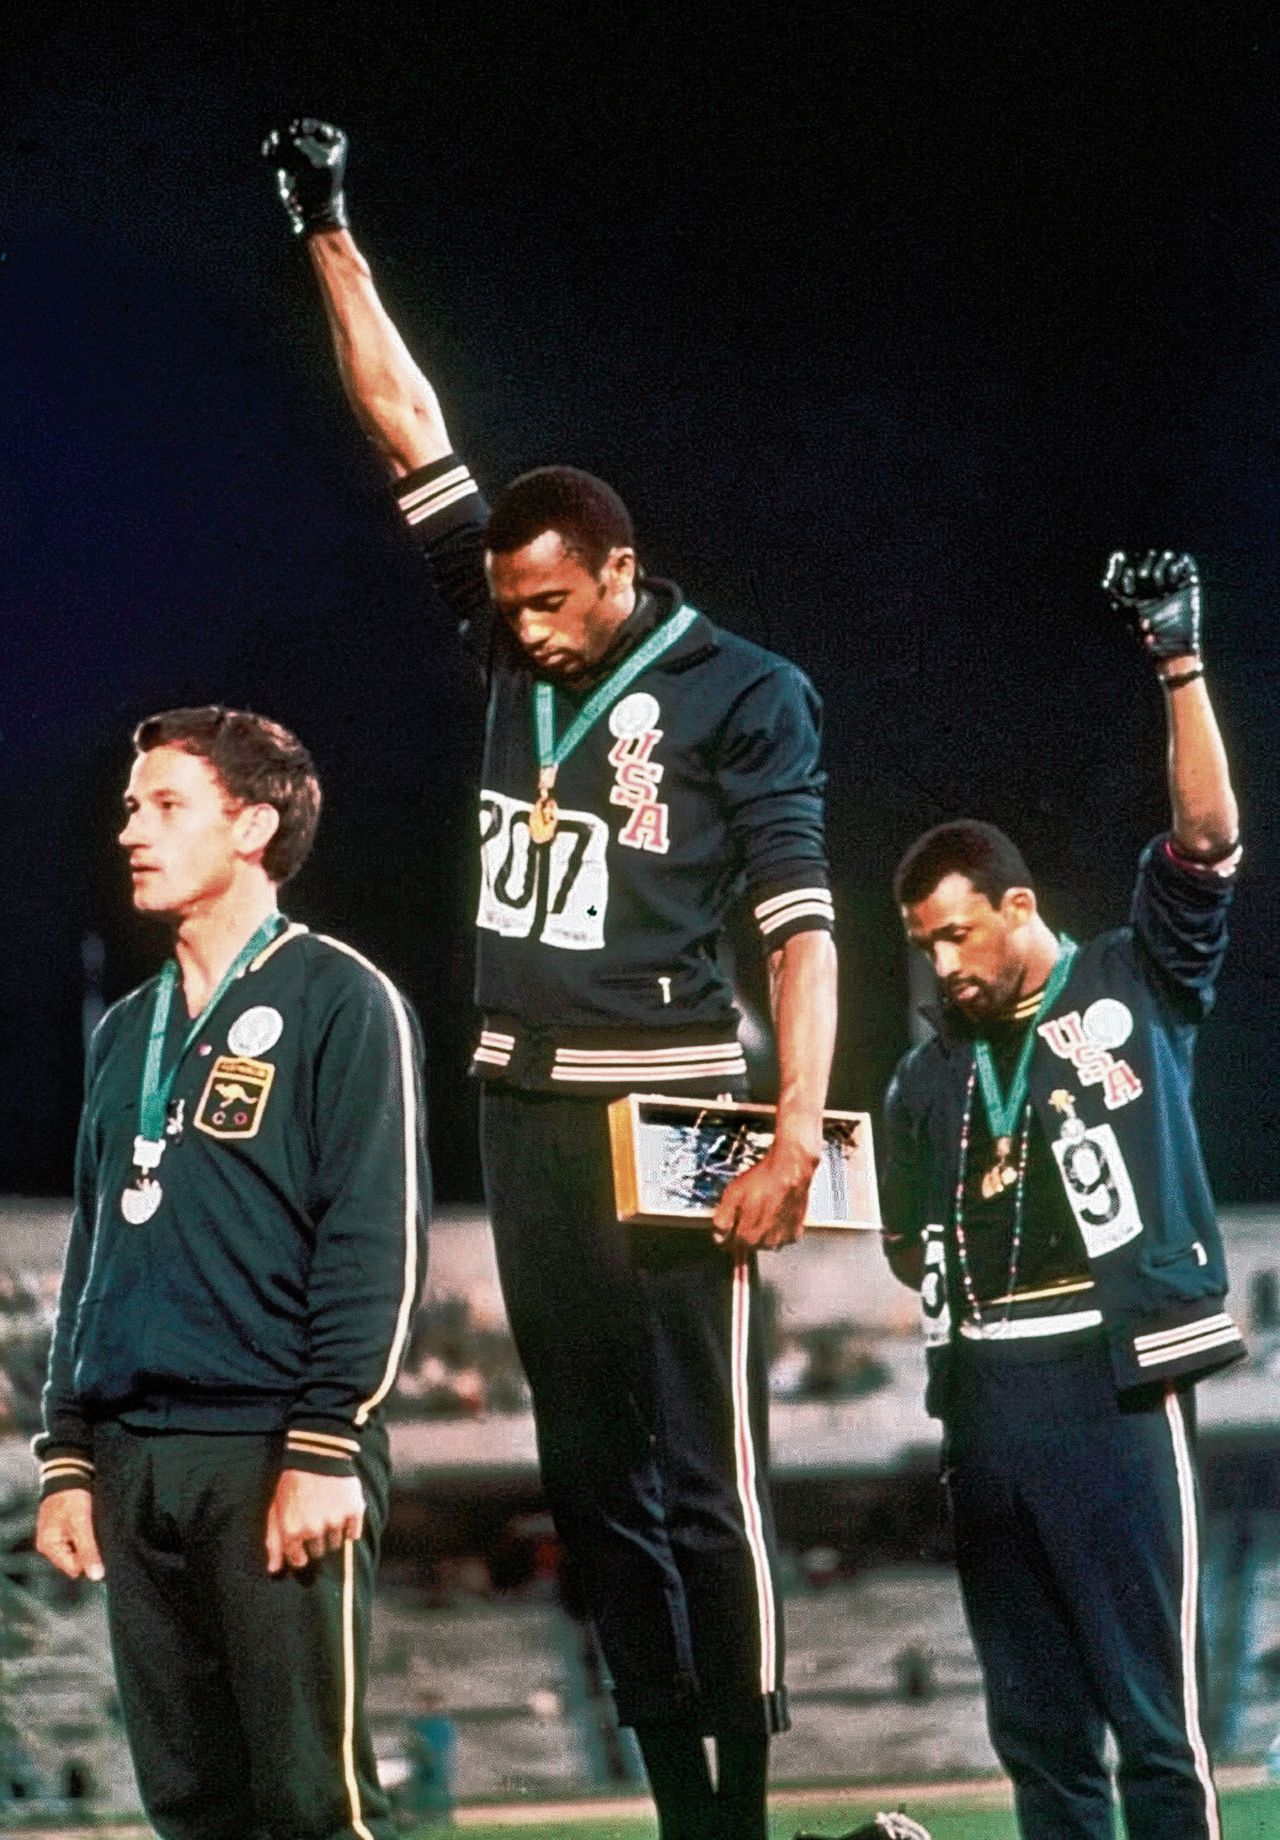 Het podium van de 200 meter: links de Australiër Peter Norman , in het midden de Amerikaanse olympisch kampioen Tommie Smith, rechts John Carlos. De drie zouden hun leven lang last houden van de demonstratie.